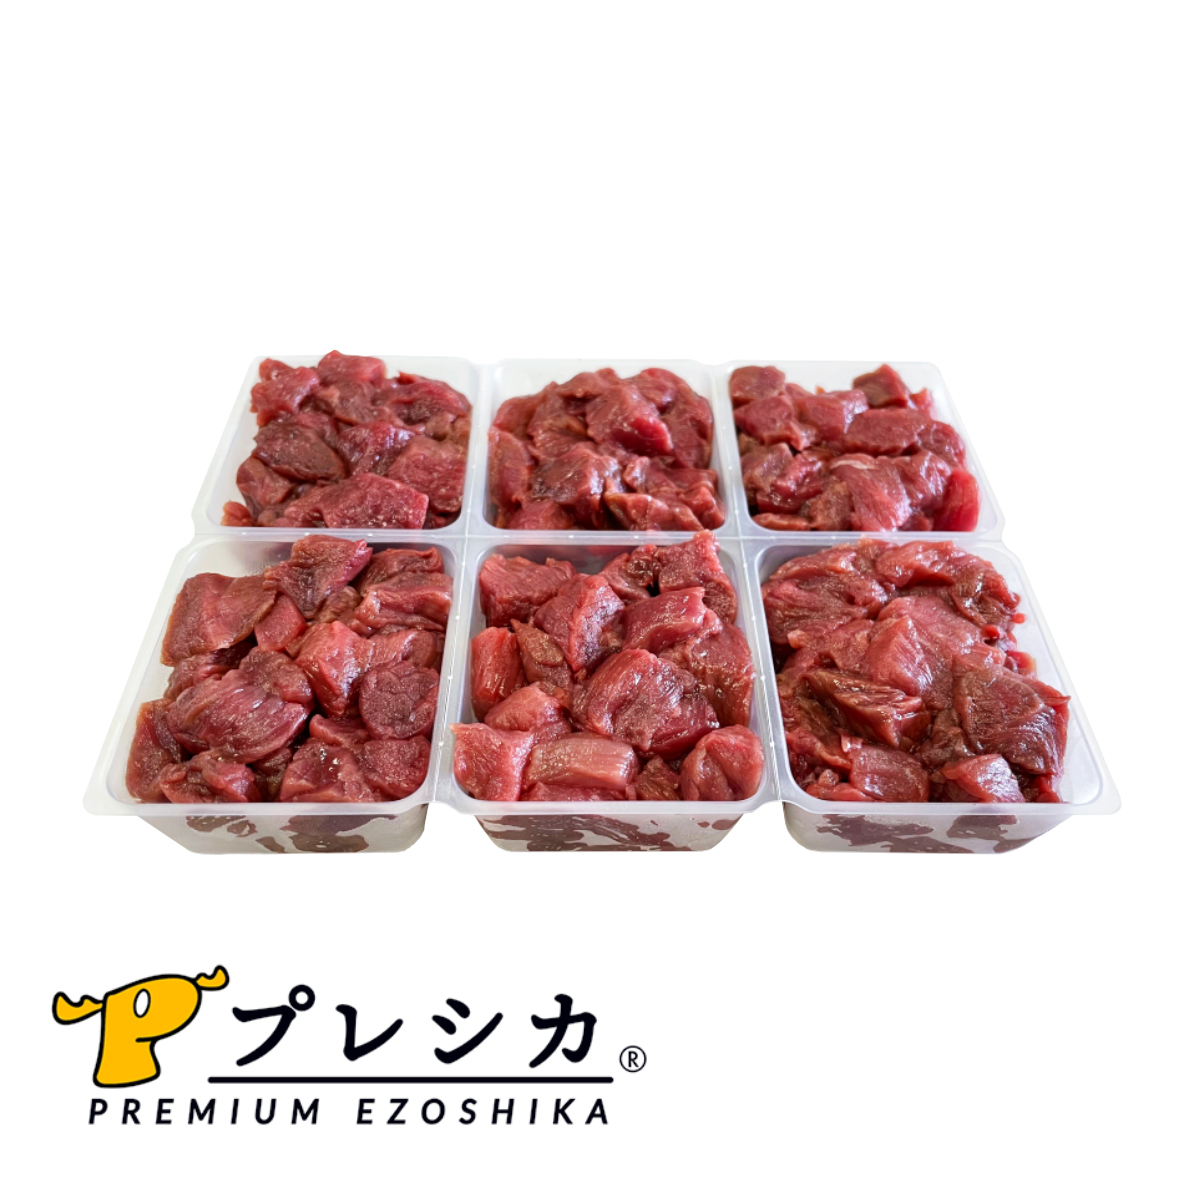 鹿肉 ドッグフード モモブツ切り小分けタイプ 2kg 北海道産 鹿肉 犬用 生肉  ドッグフード 無添加 ジビエ ペットフード ご飯 ごはん おやつ 餌